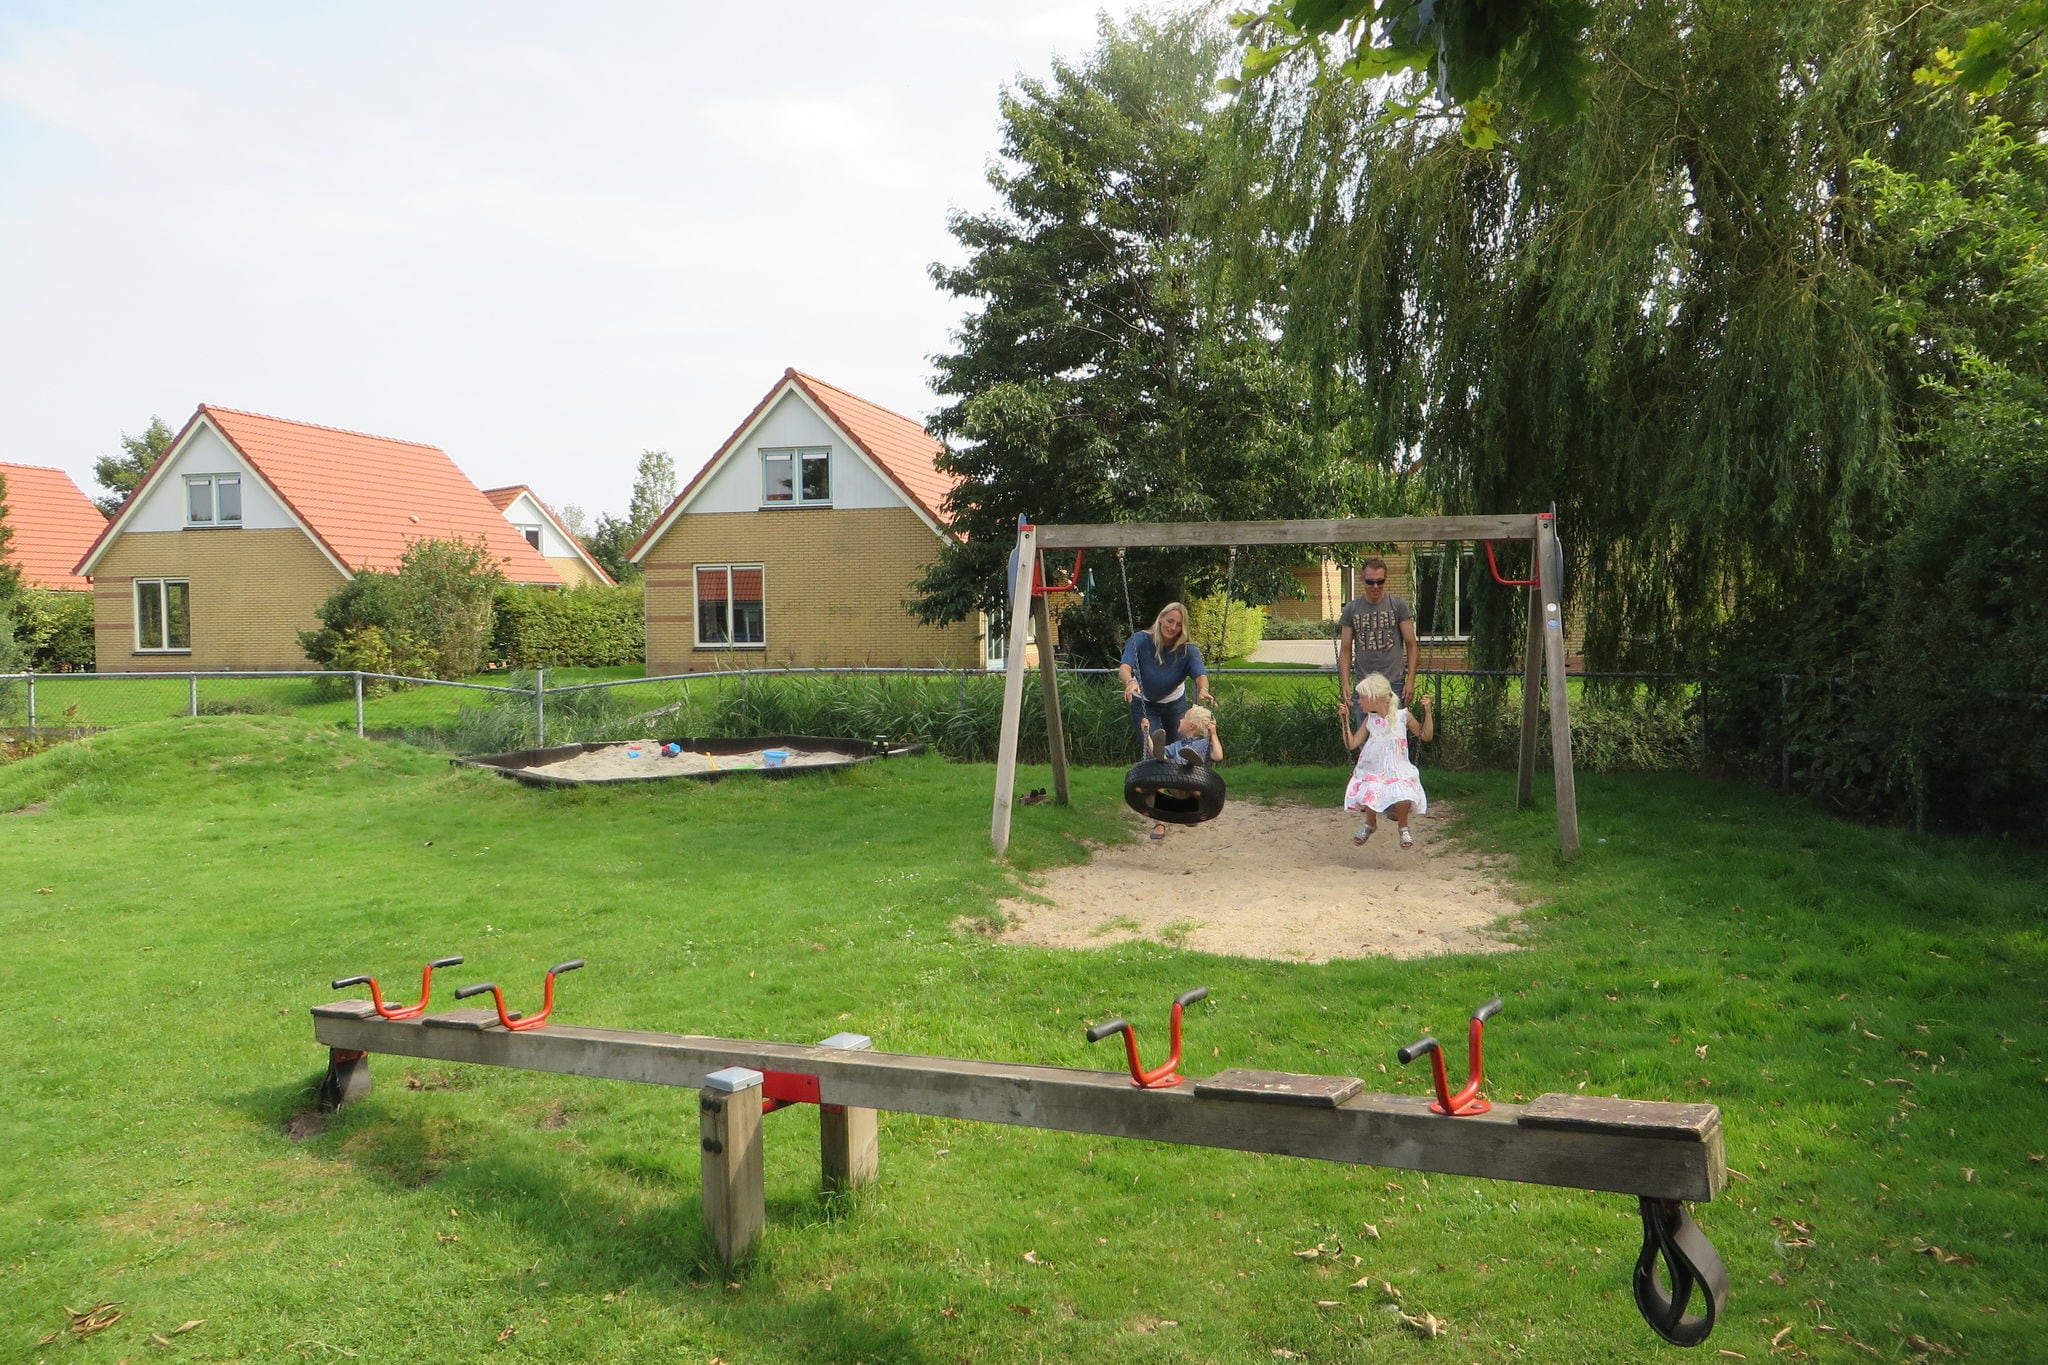 Ferienhaus mit Steiger, 19 km. Van Hoorn